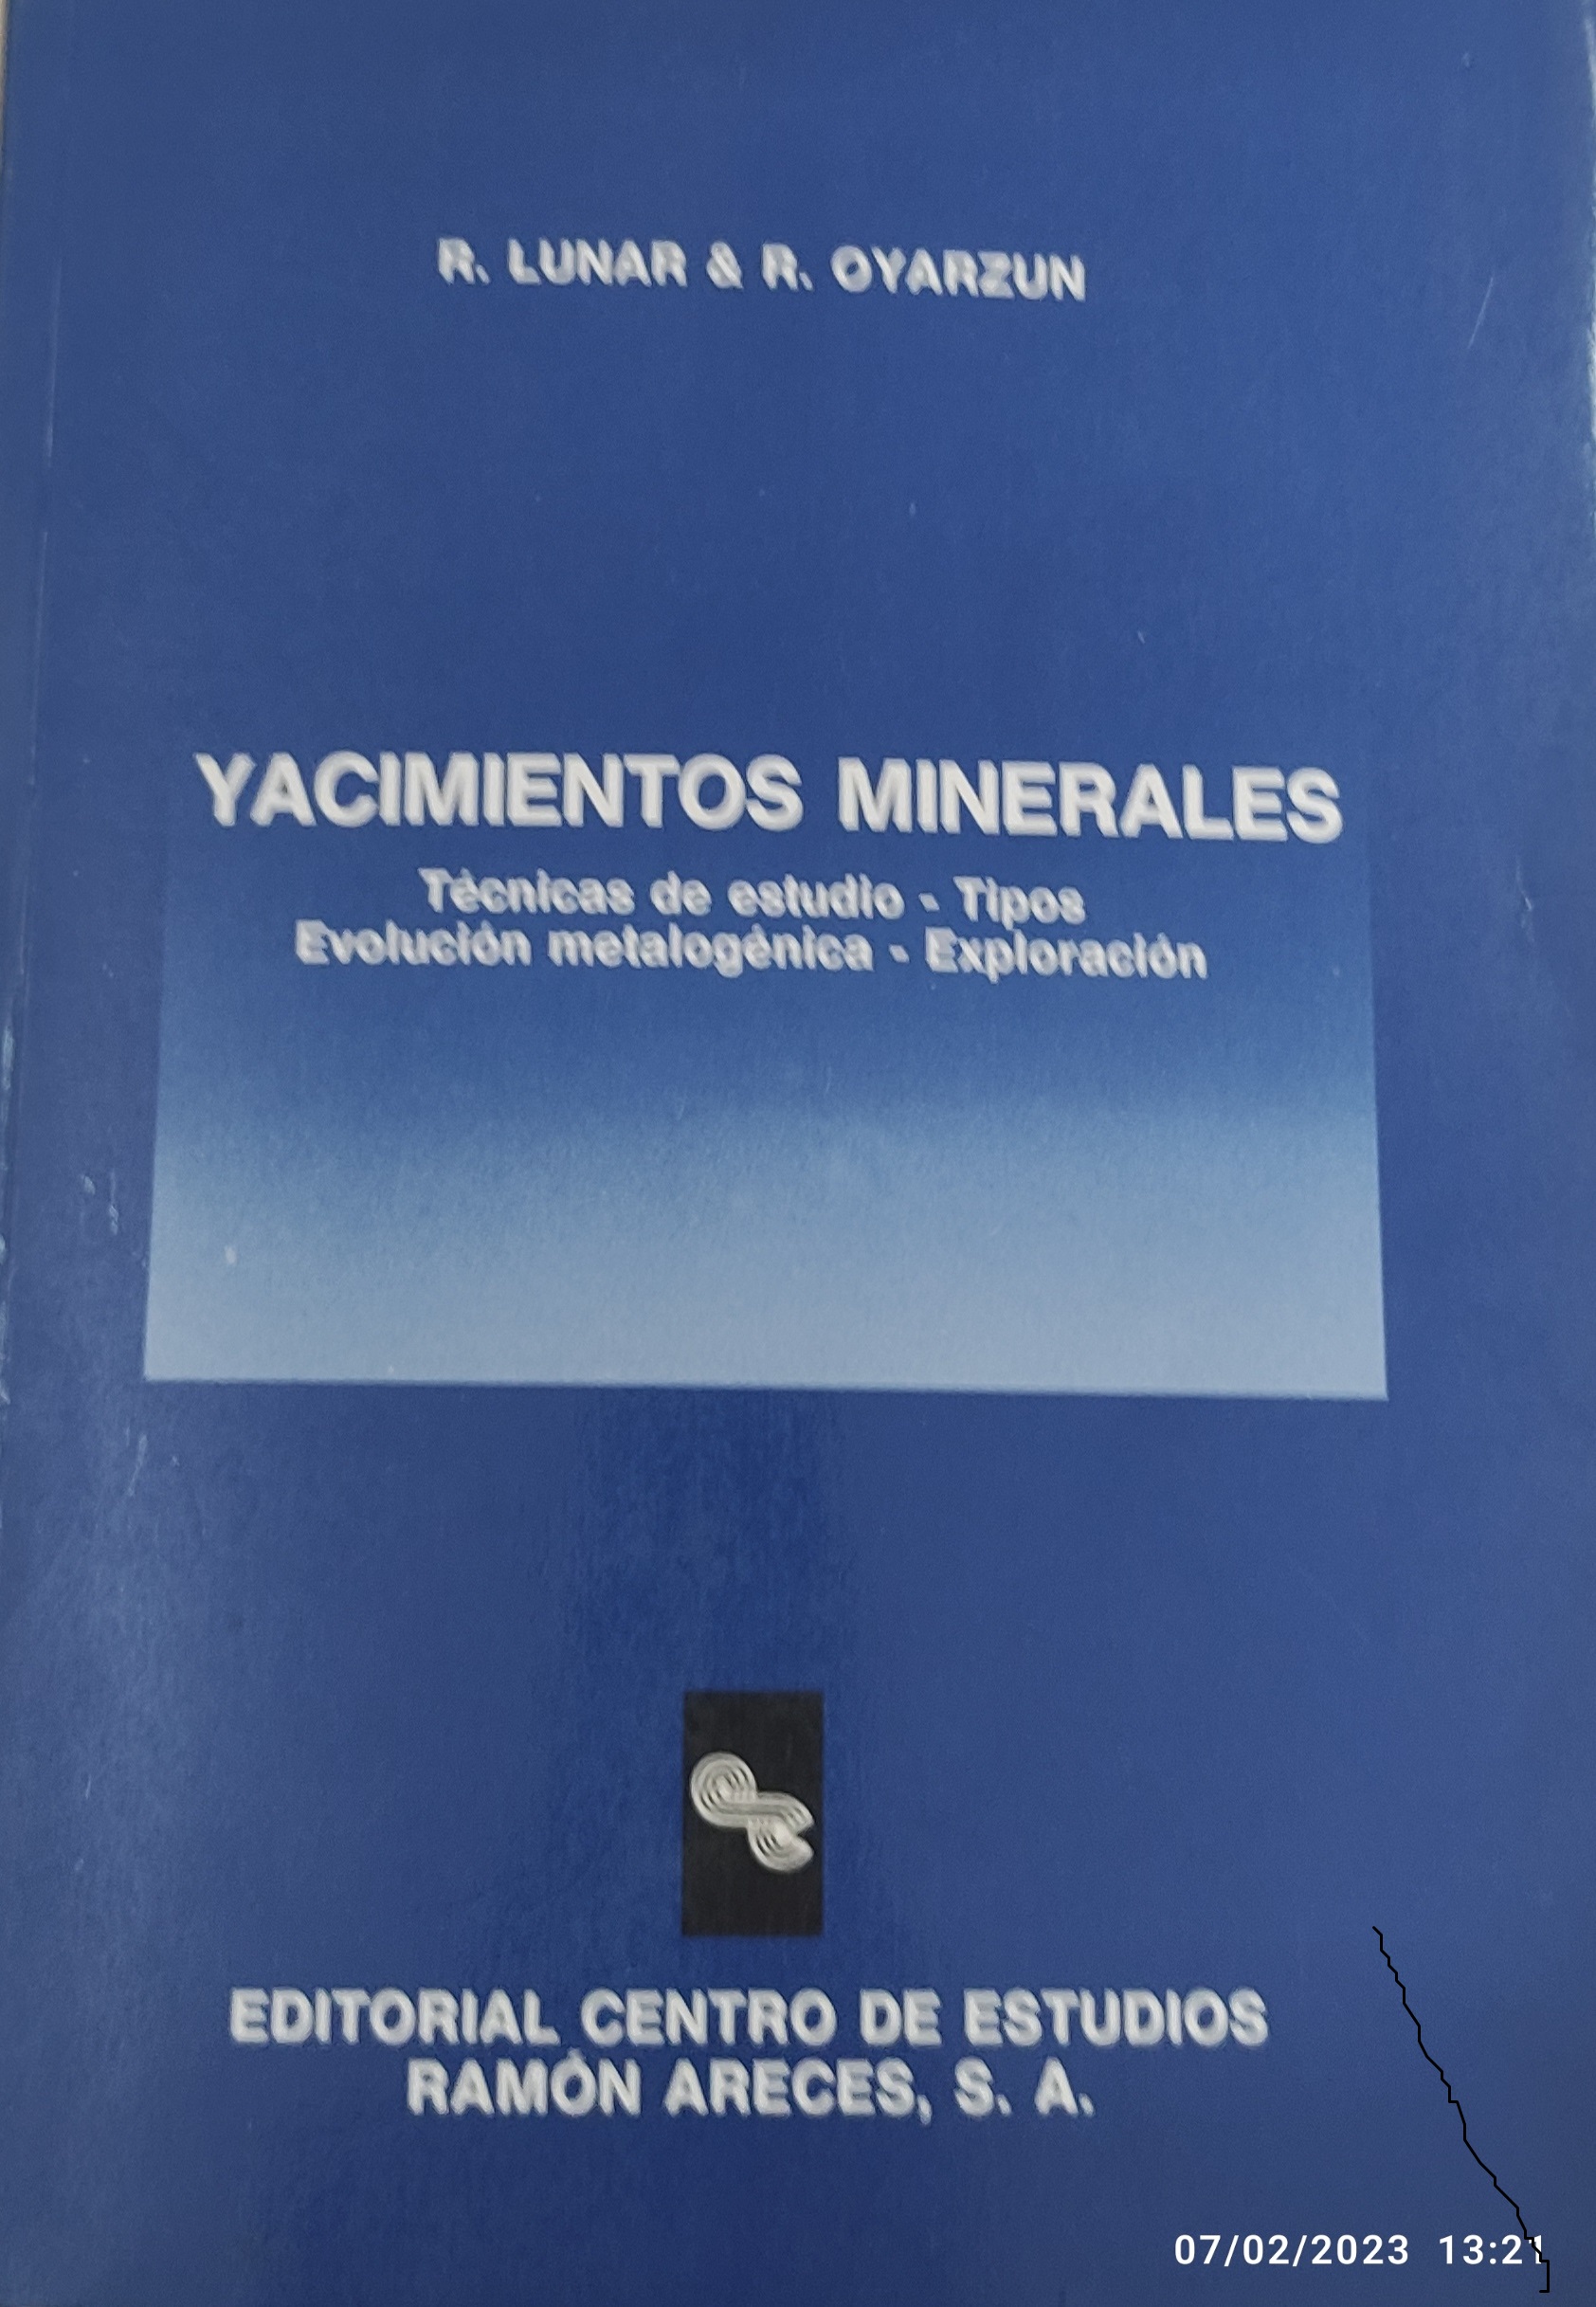 Imagen de portada del libro Yacimientos minerales